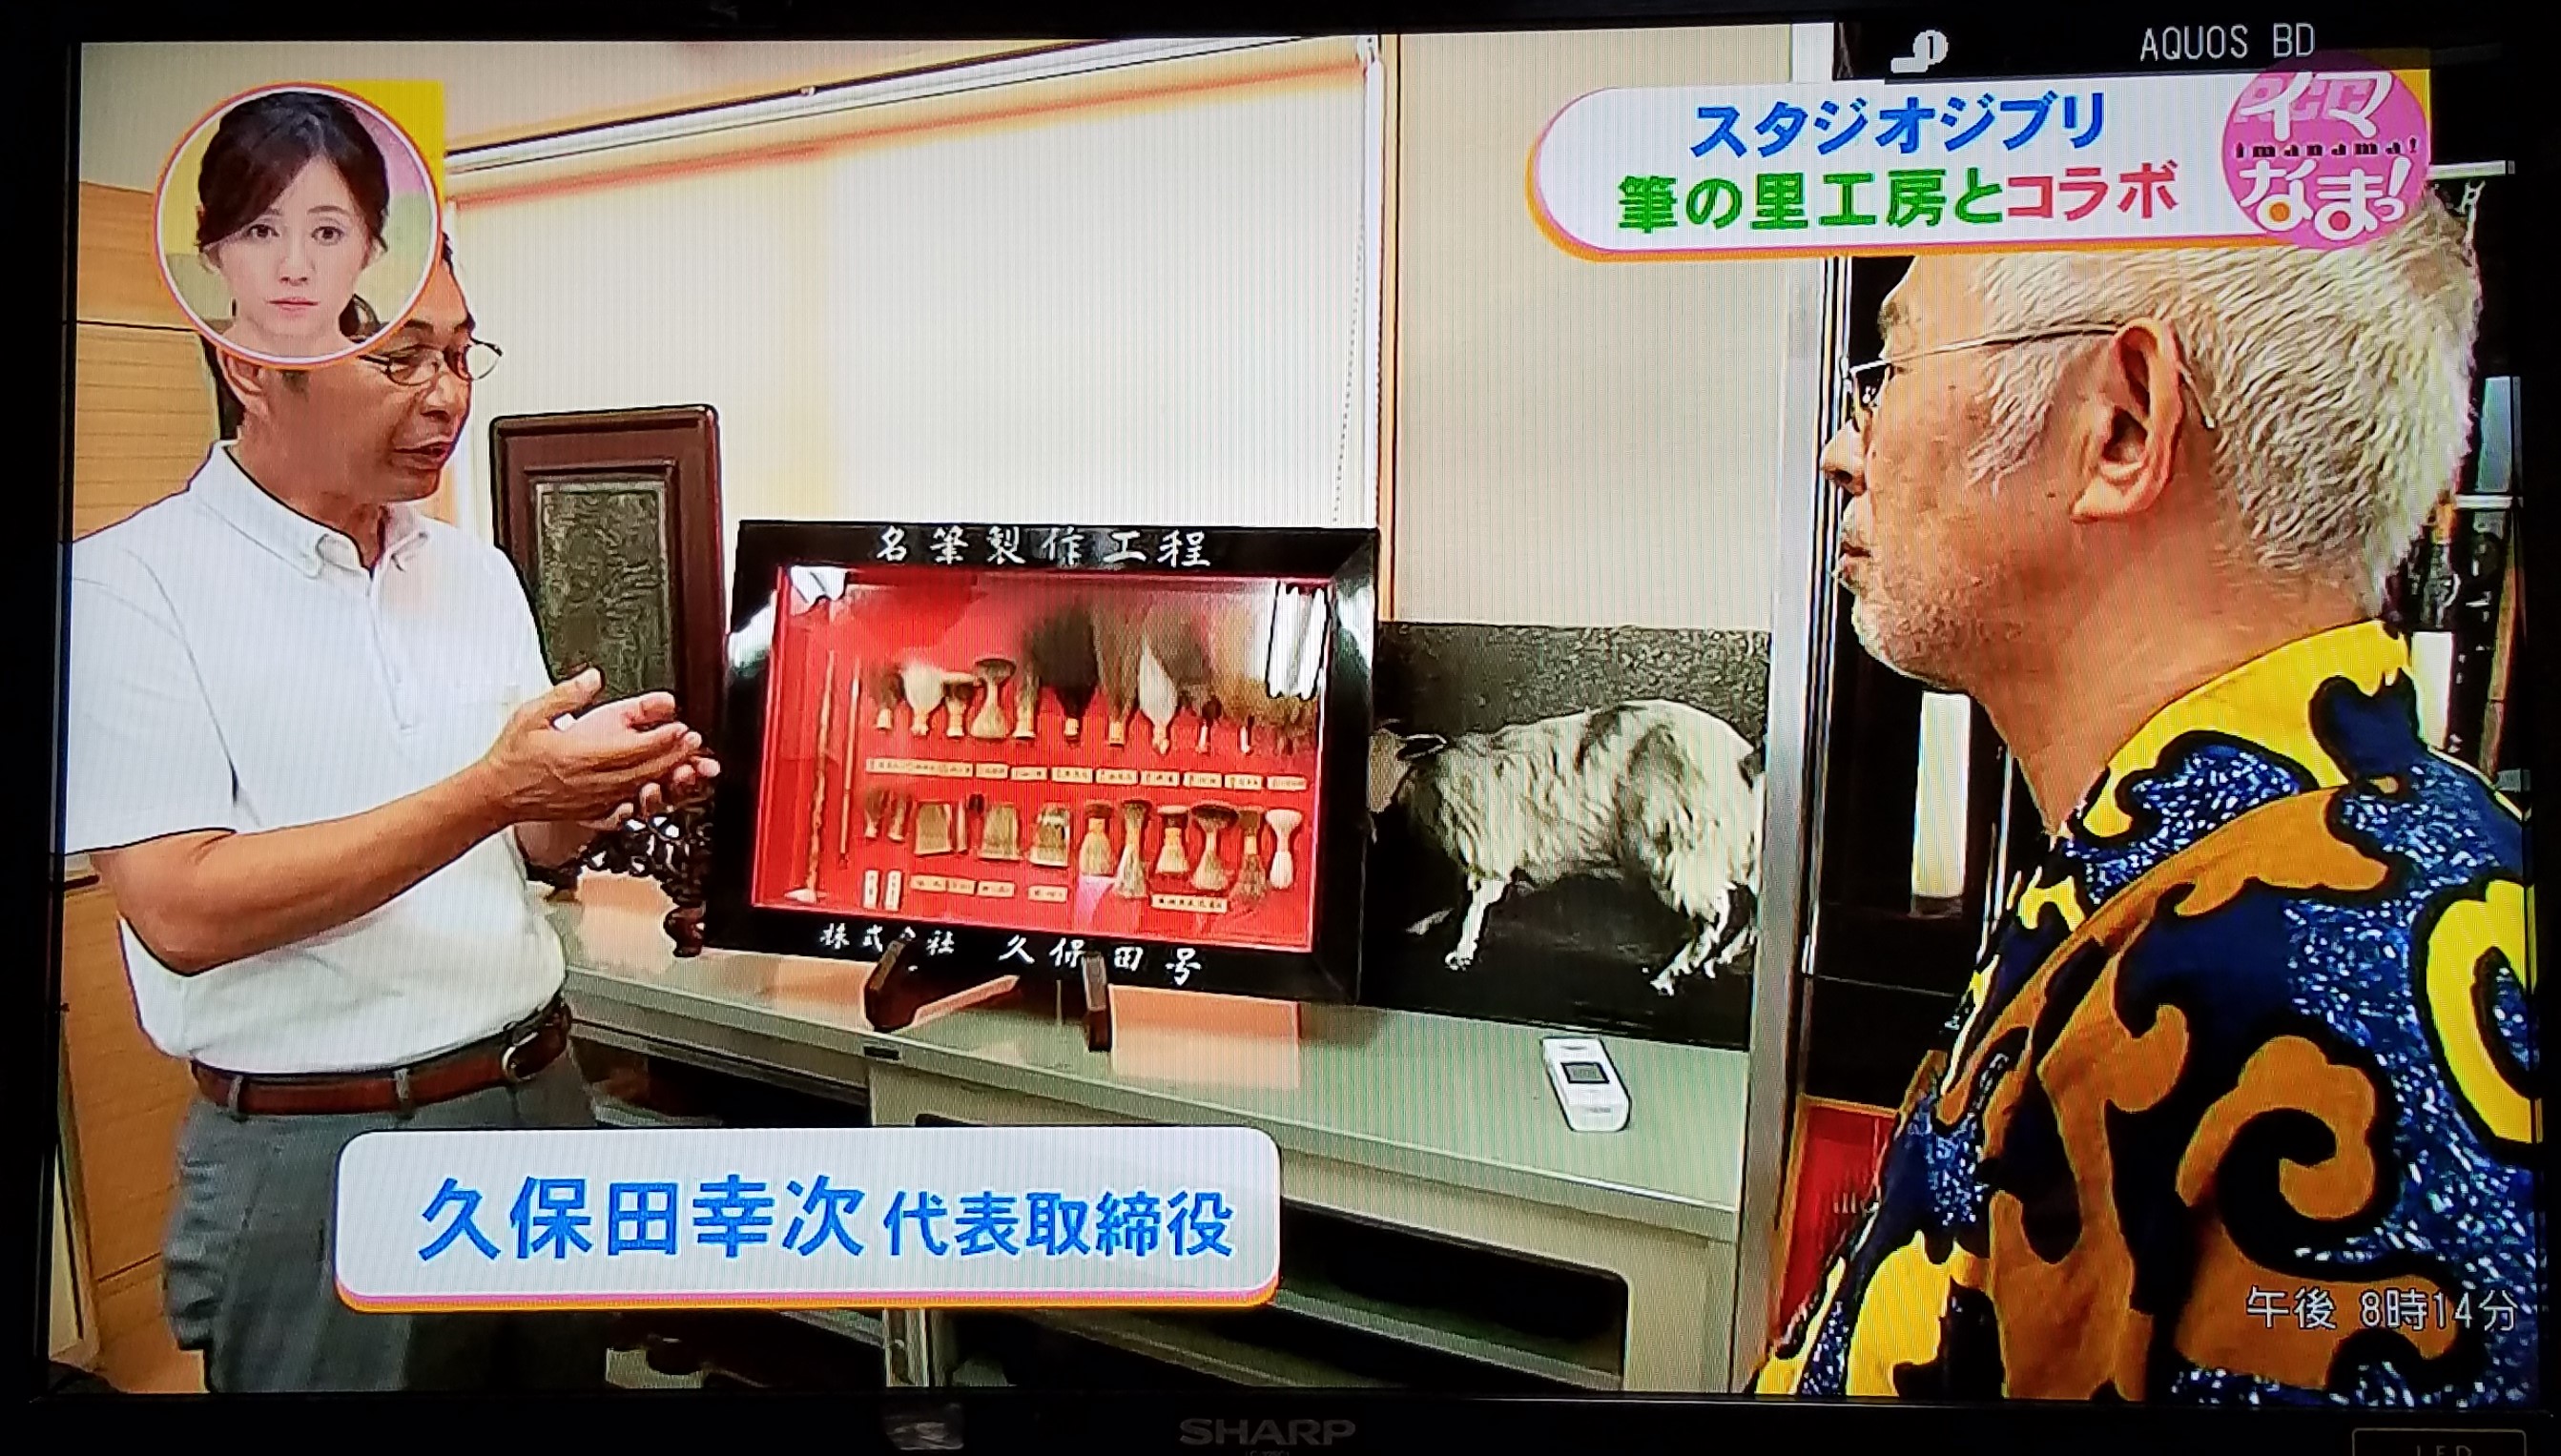 スタジオジブリの鈴木敏夫さんを久保田号社長の久保田幸次が案内しました。